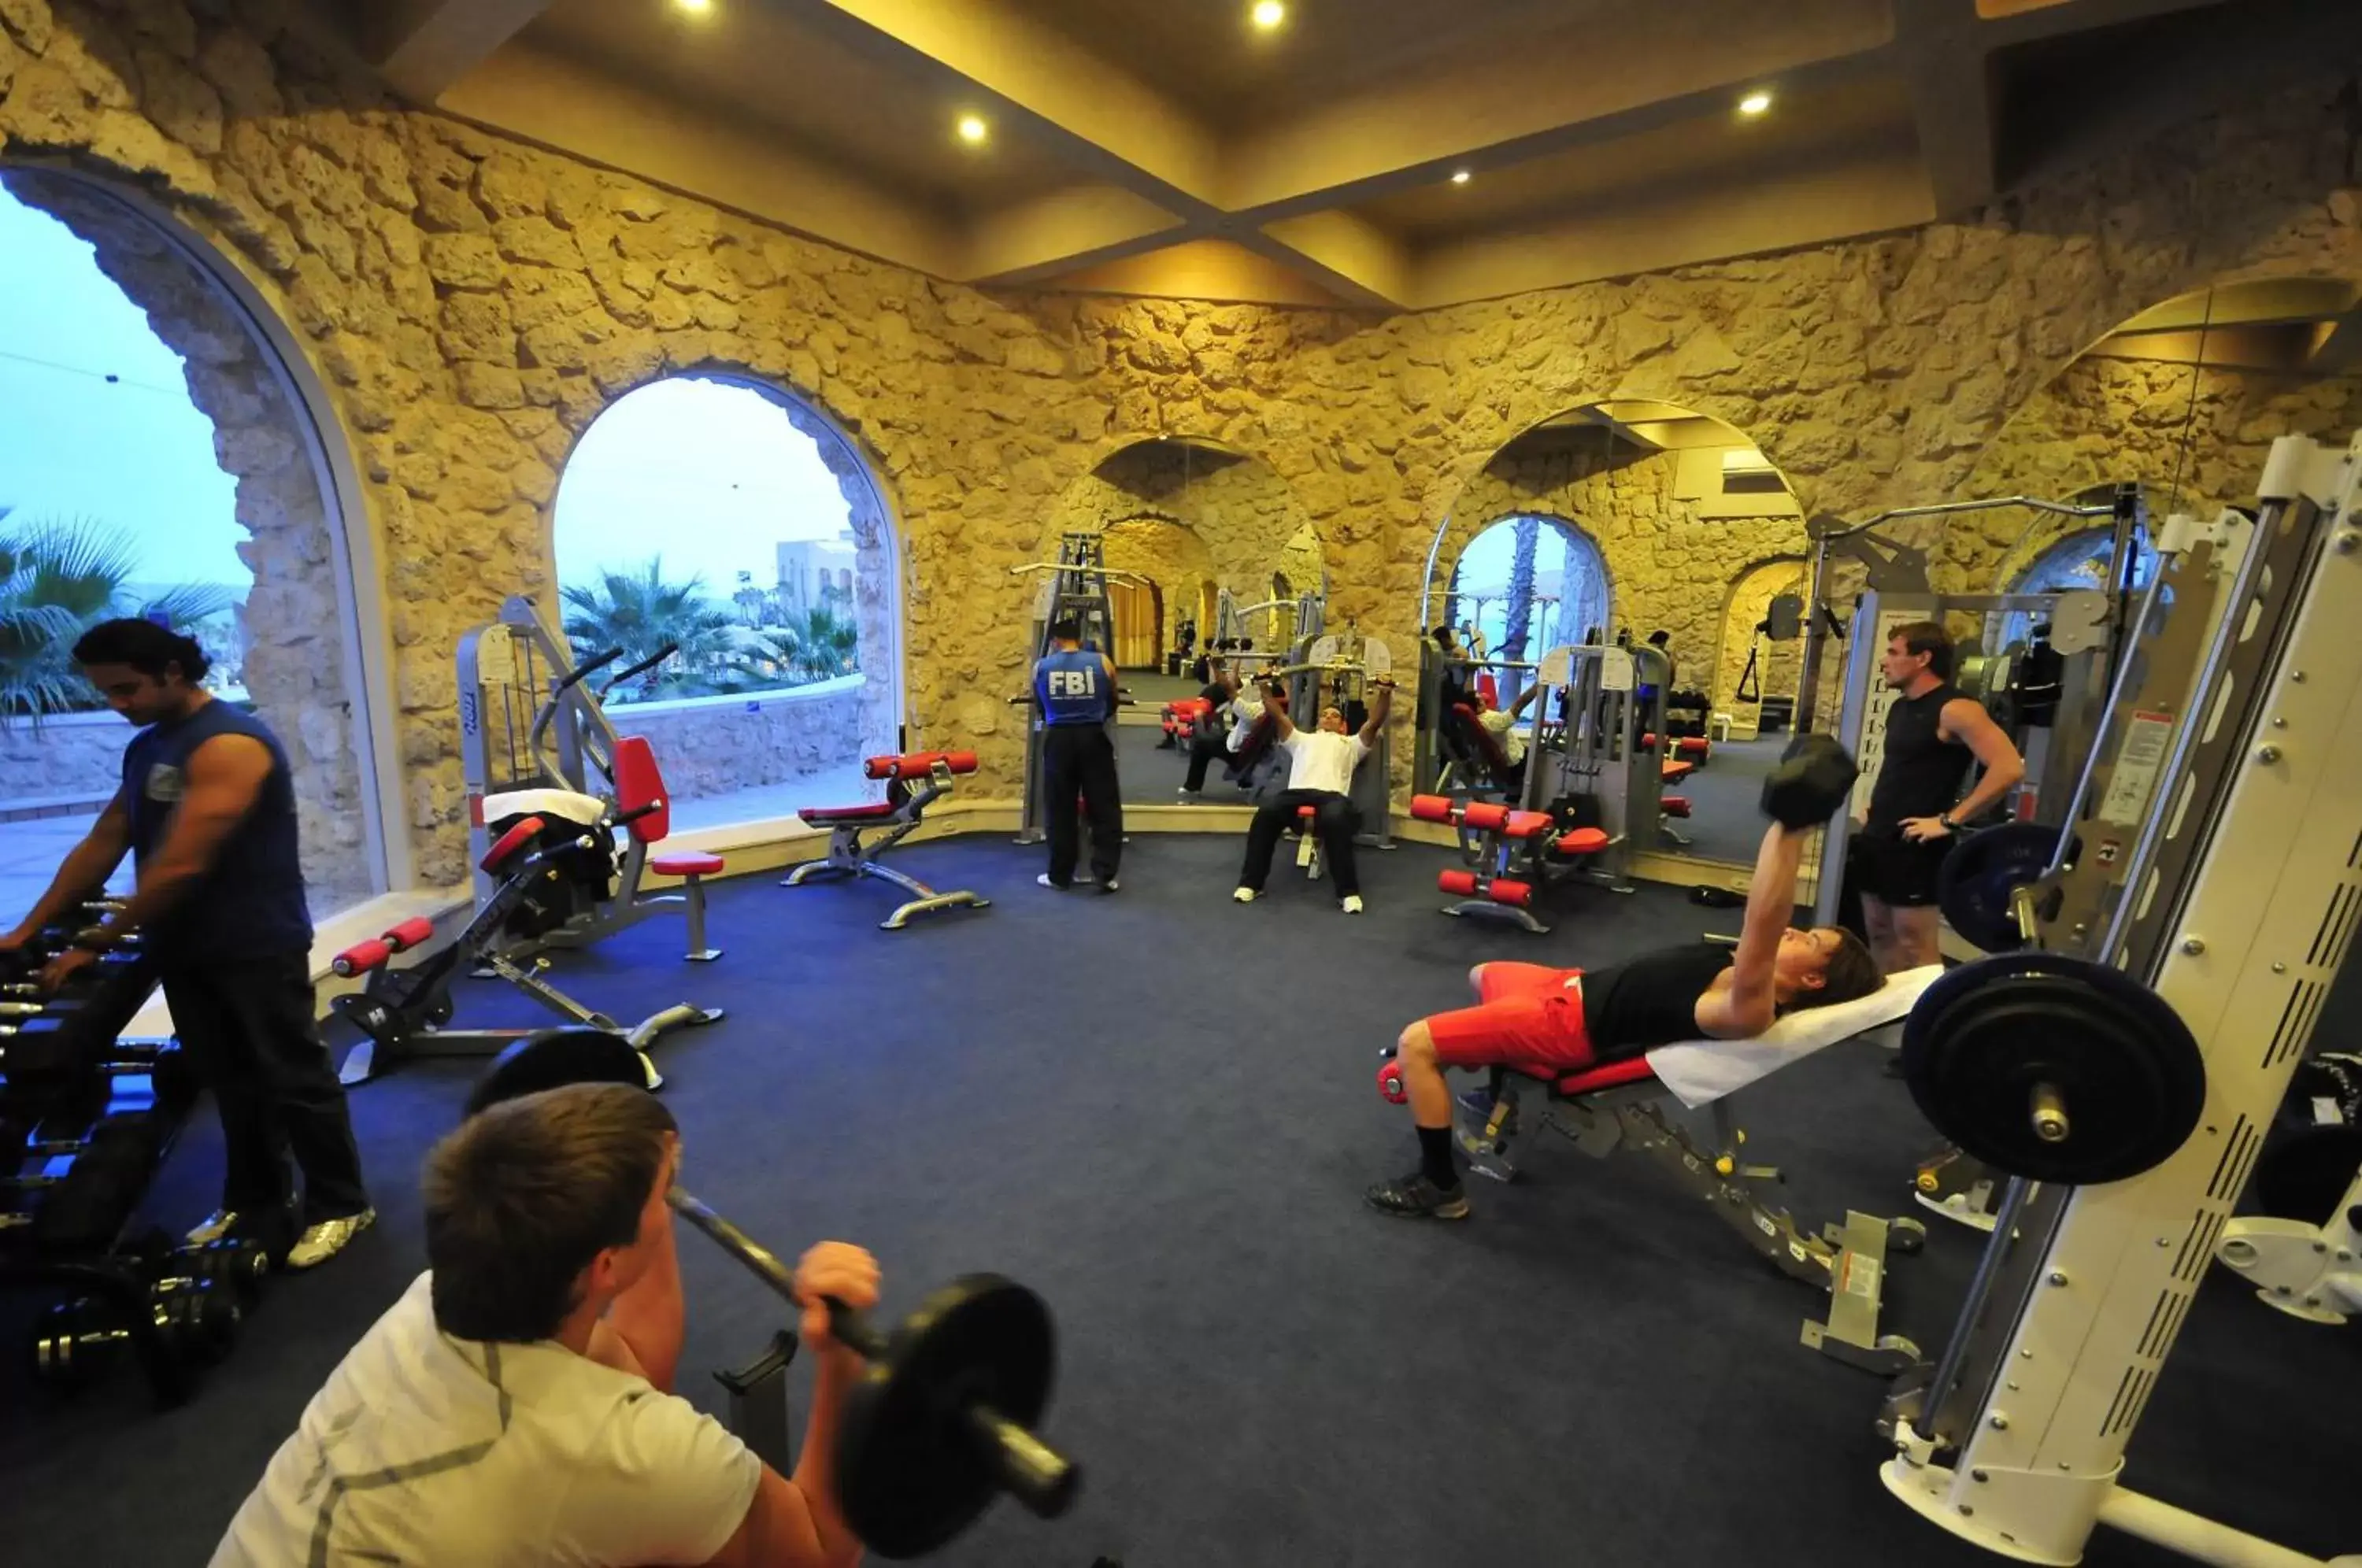 Fitness centre/facilities, Fitness Center/Facilities in Pickalbatros Citadel Resort Sahl Hasheesh